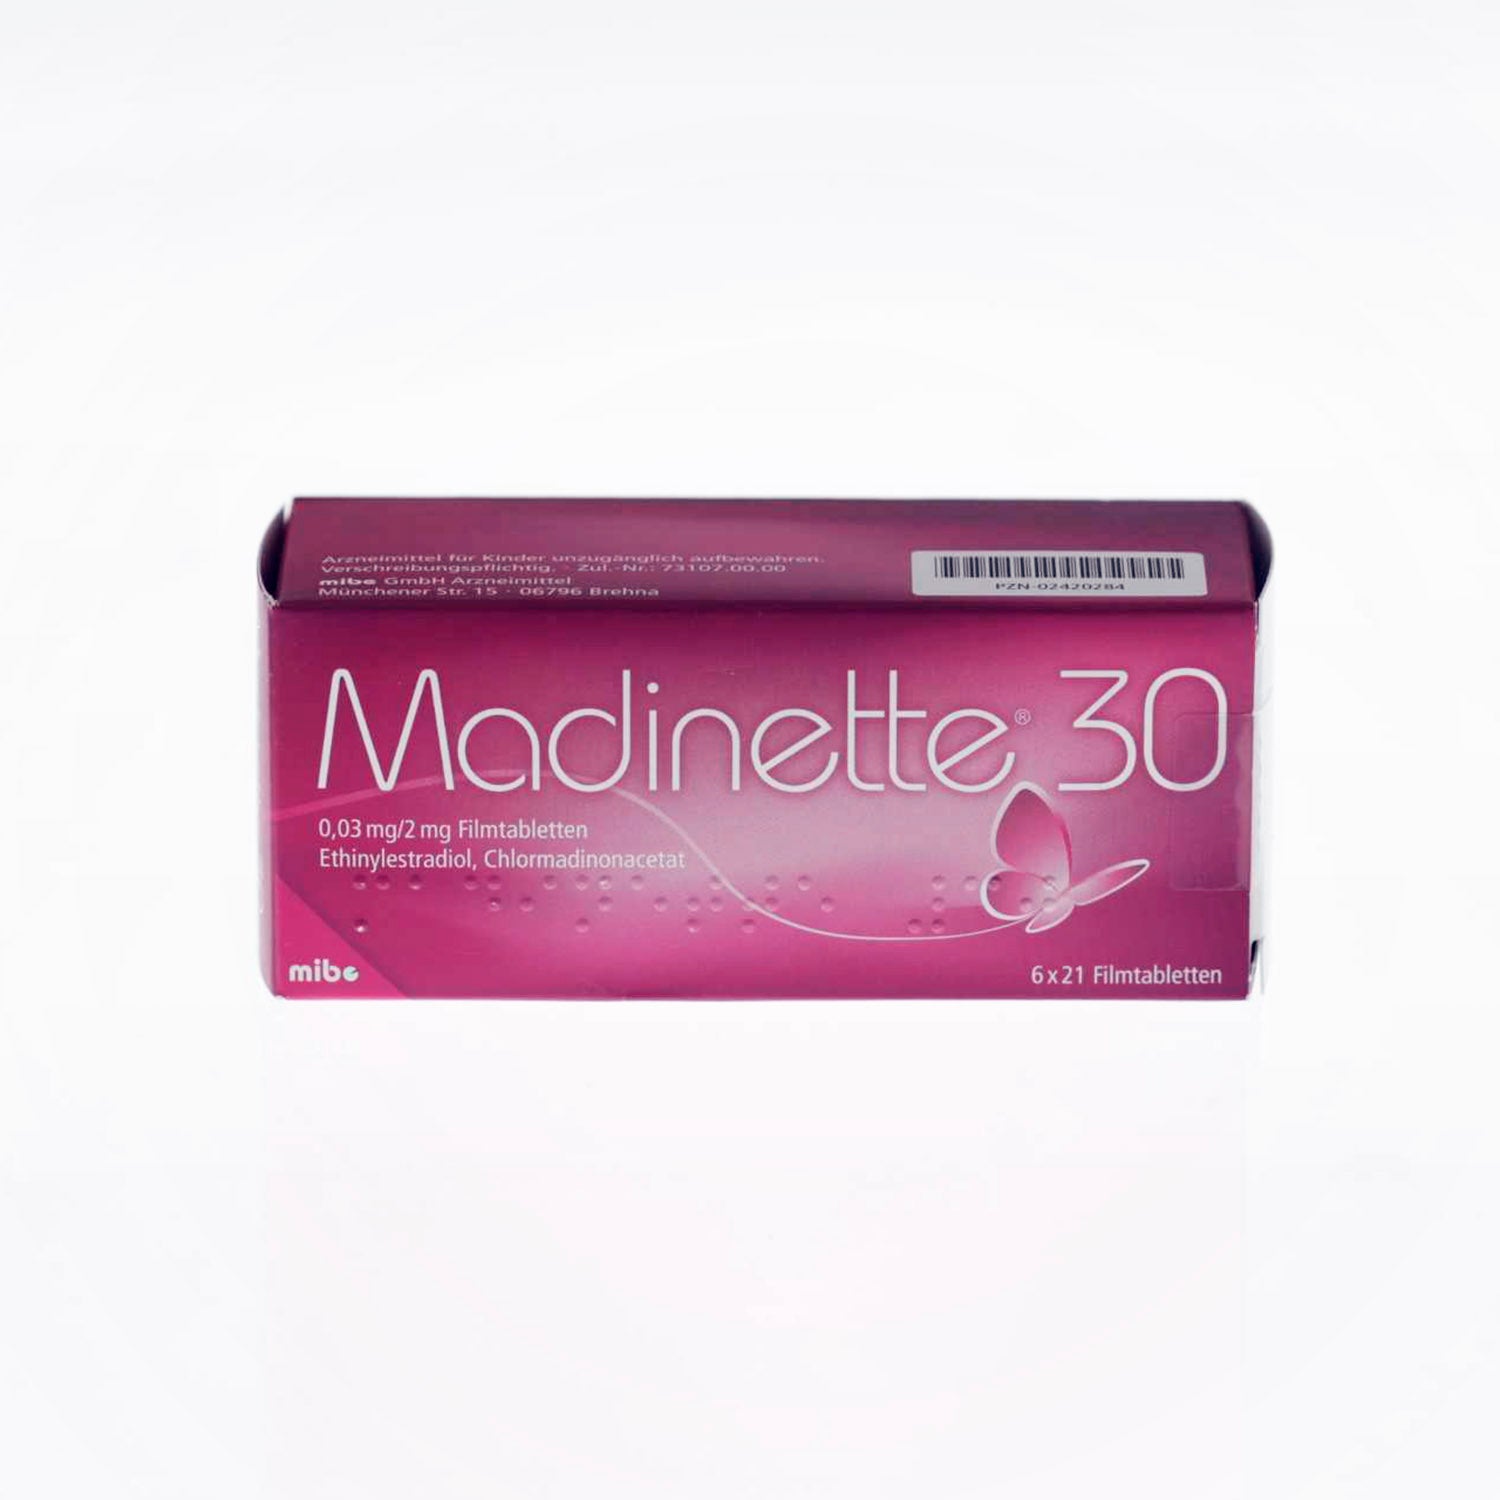 Madinette 30